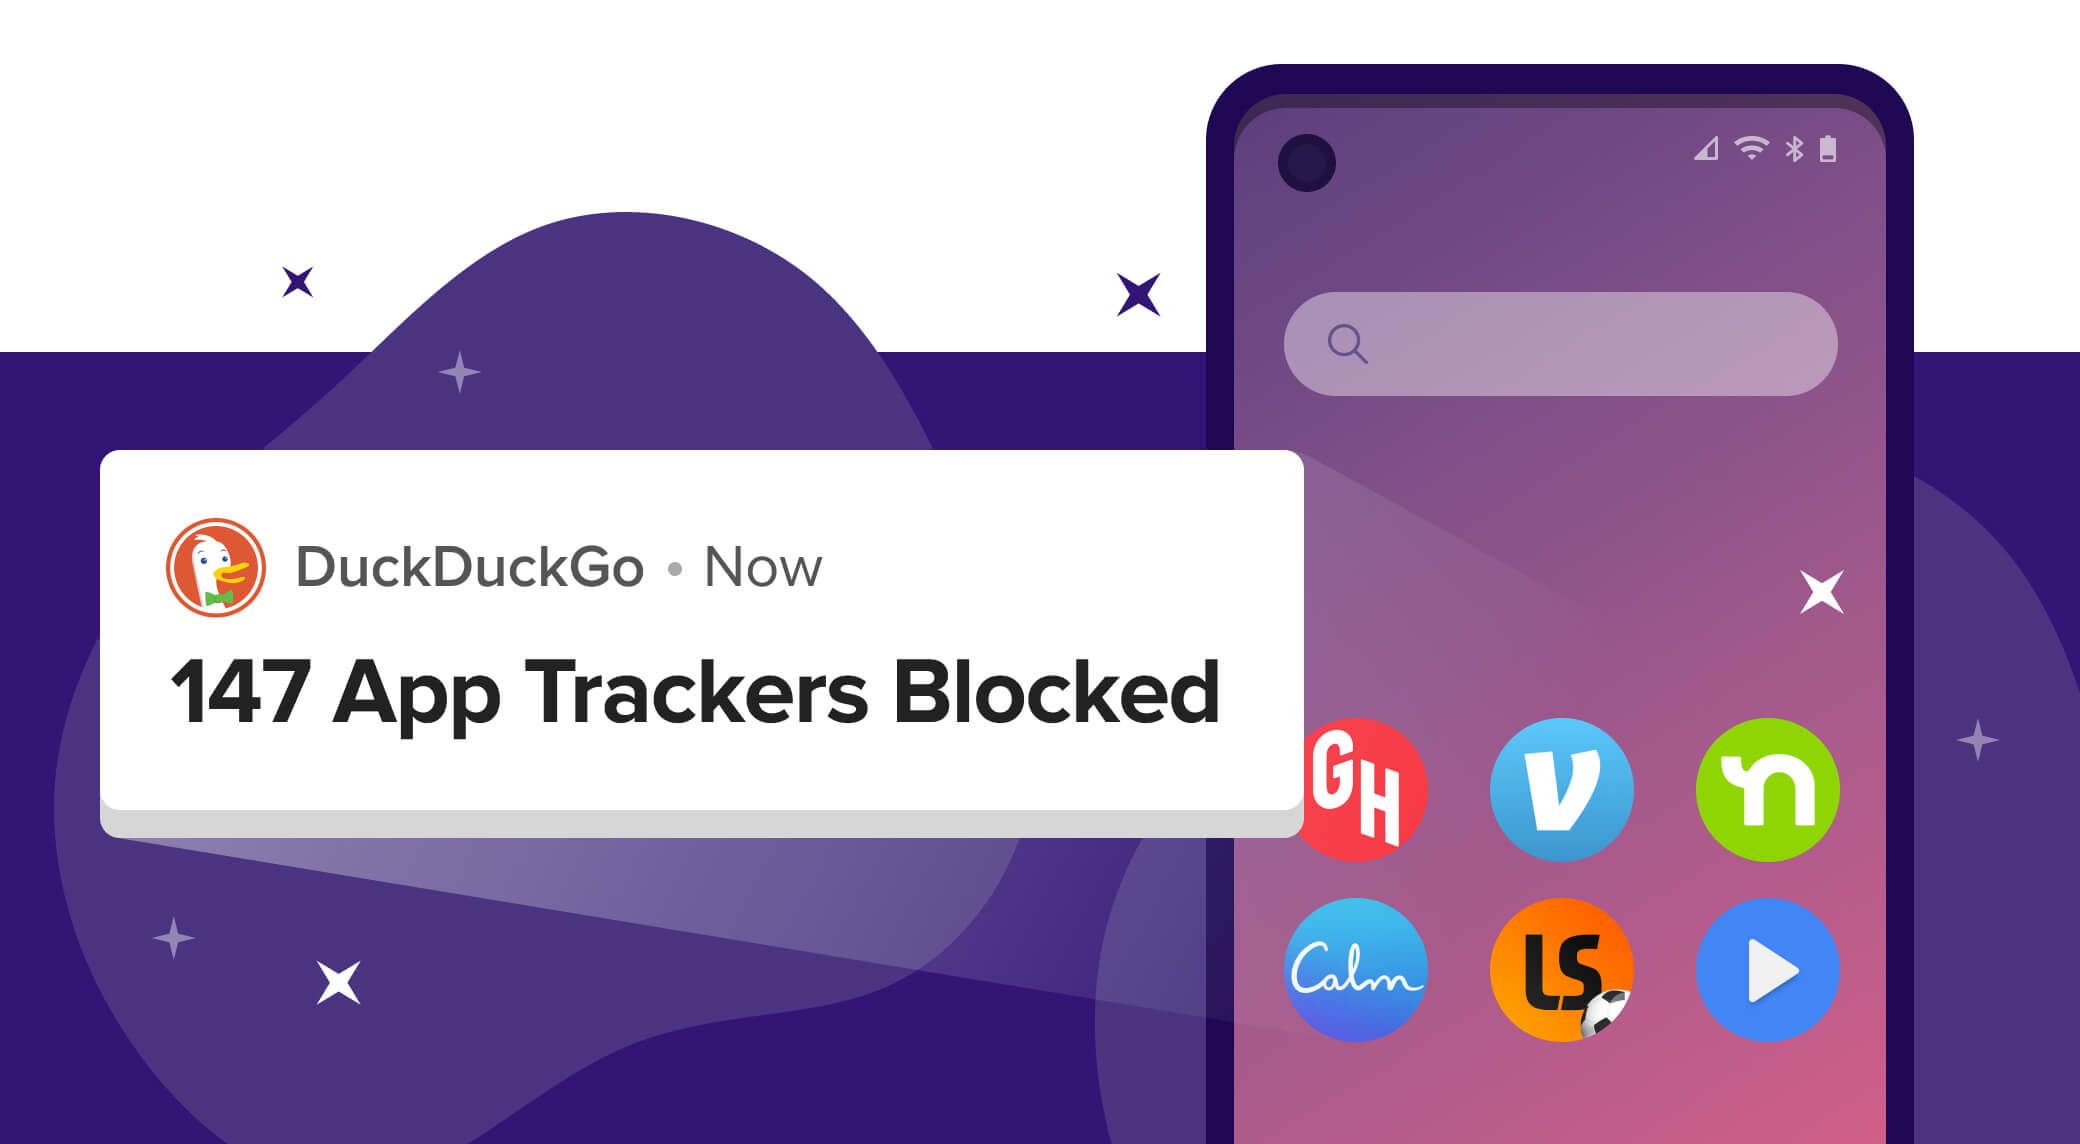 DuckDuckGo privacy protection